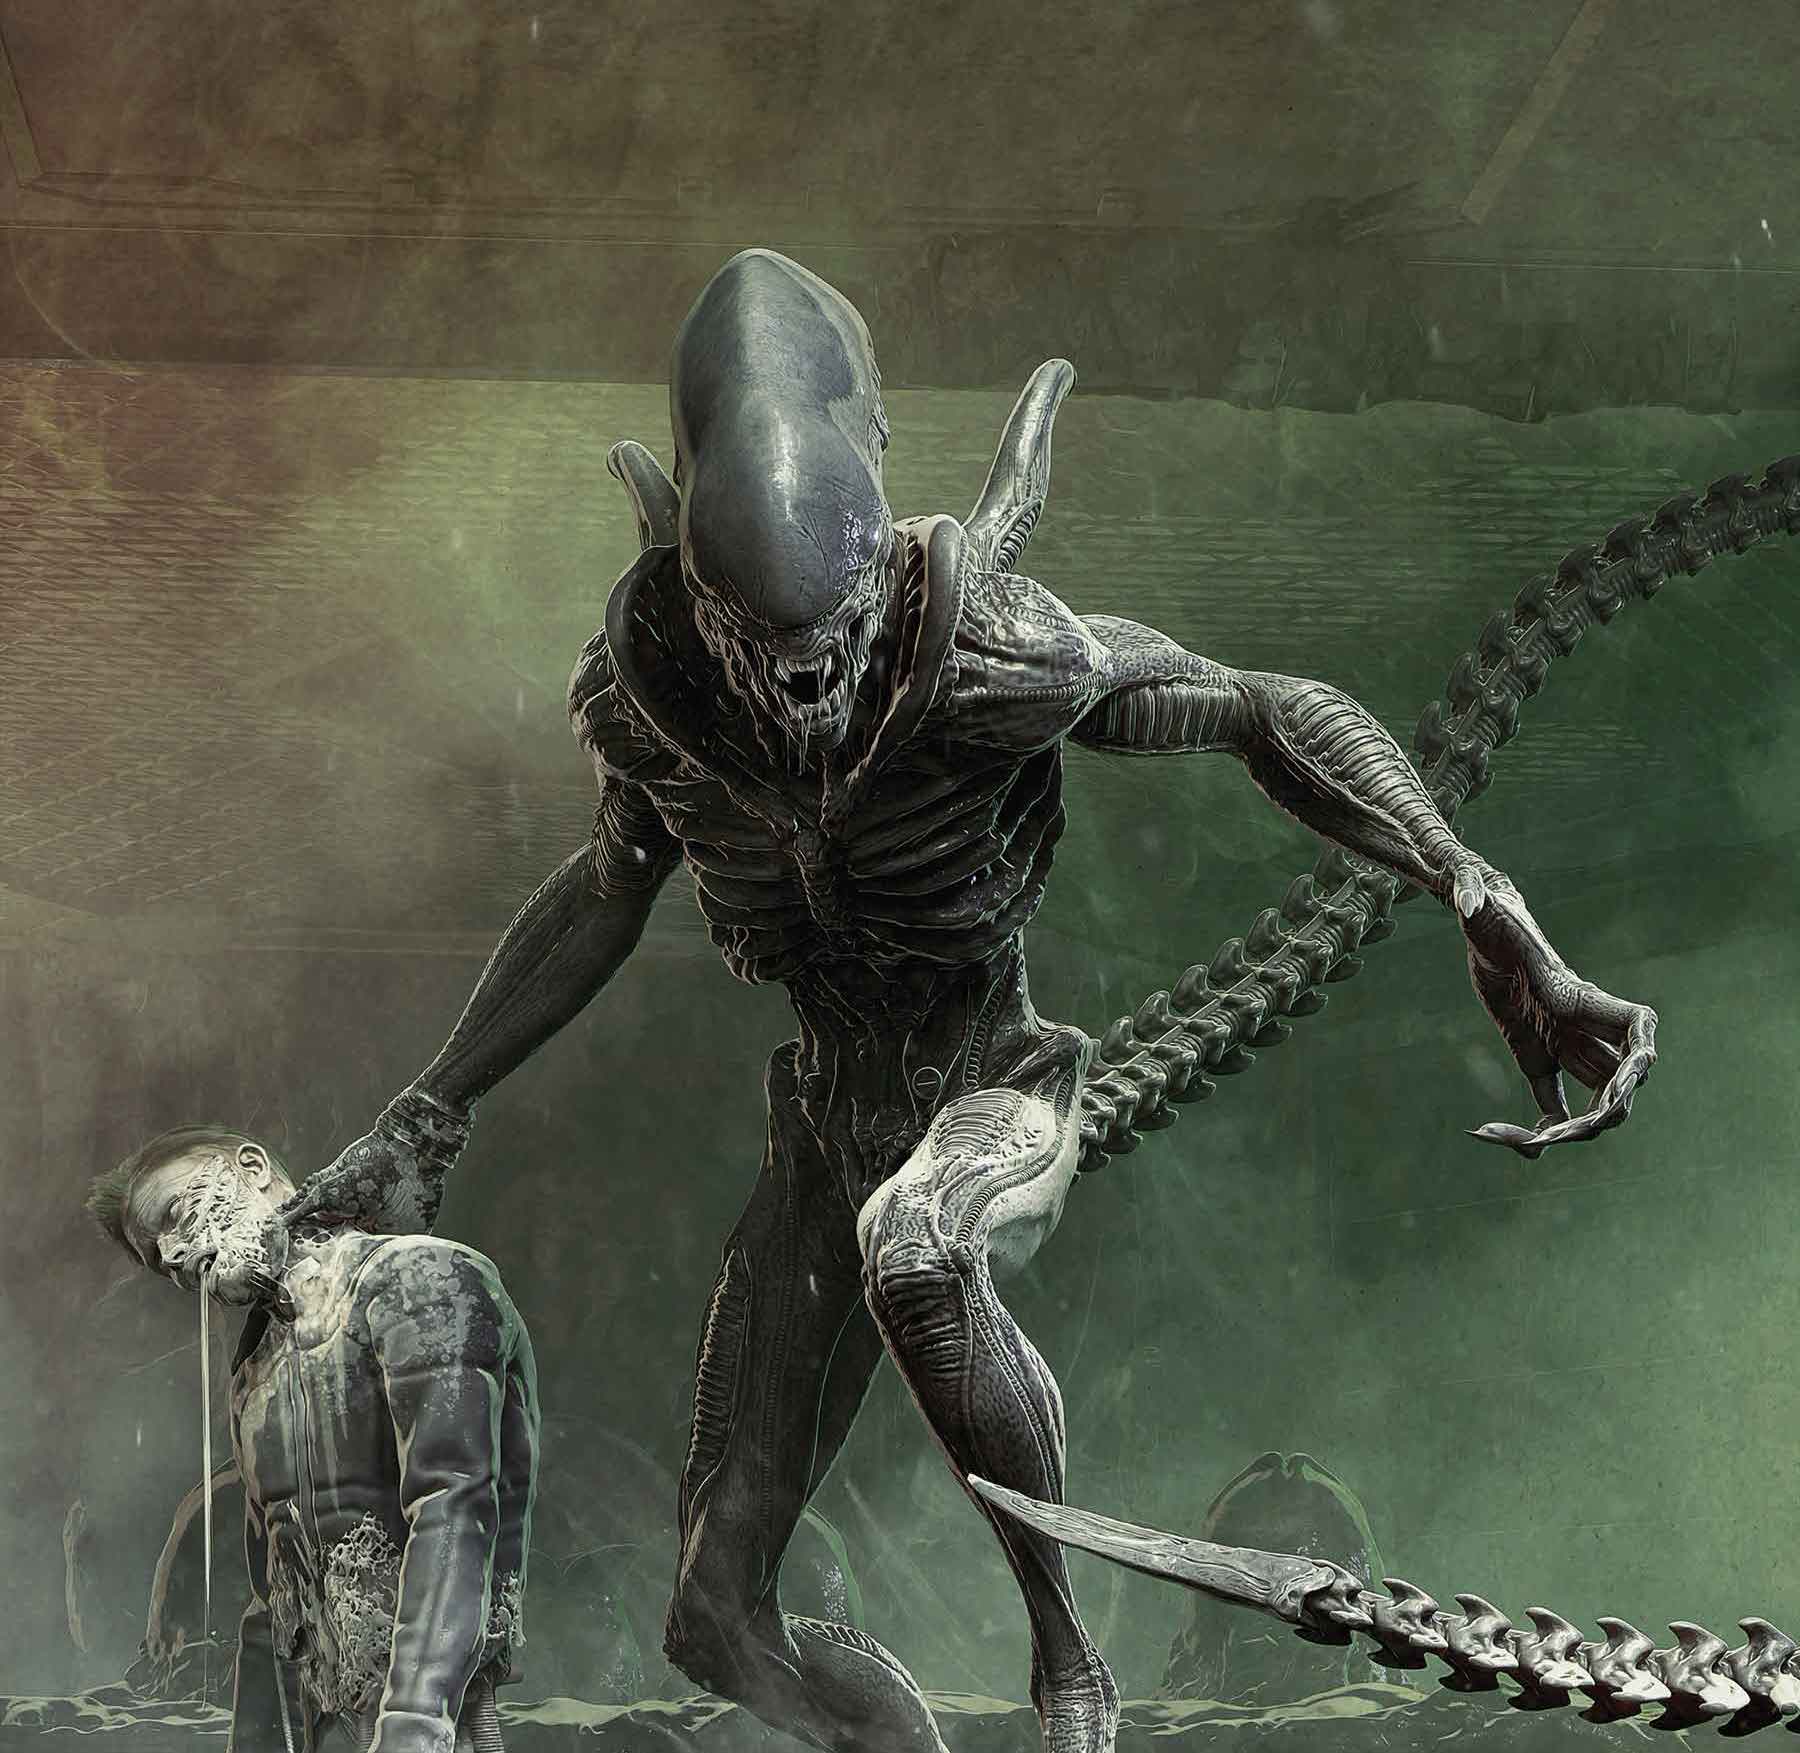 Marvel launching new 'Alien' series September 7th